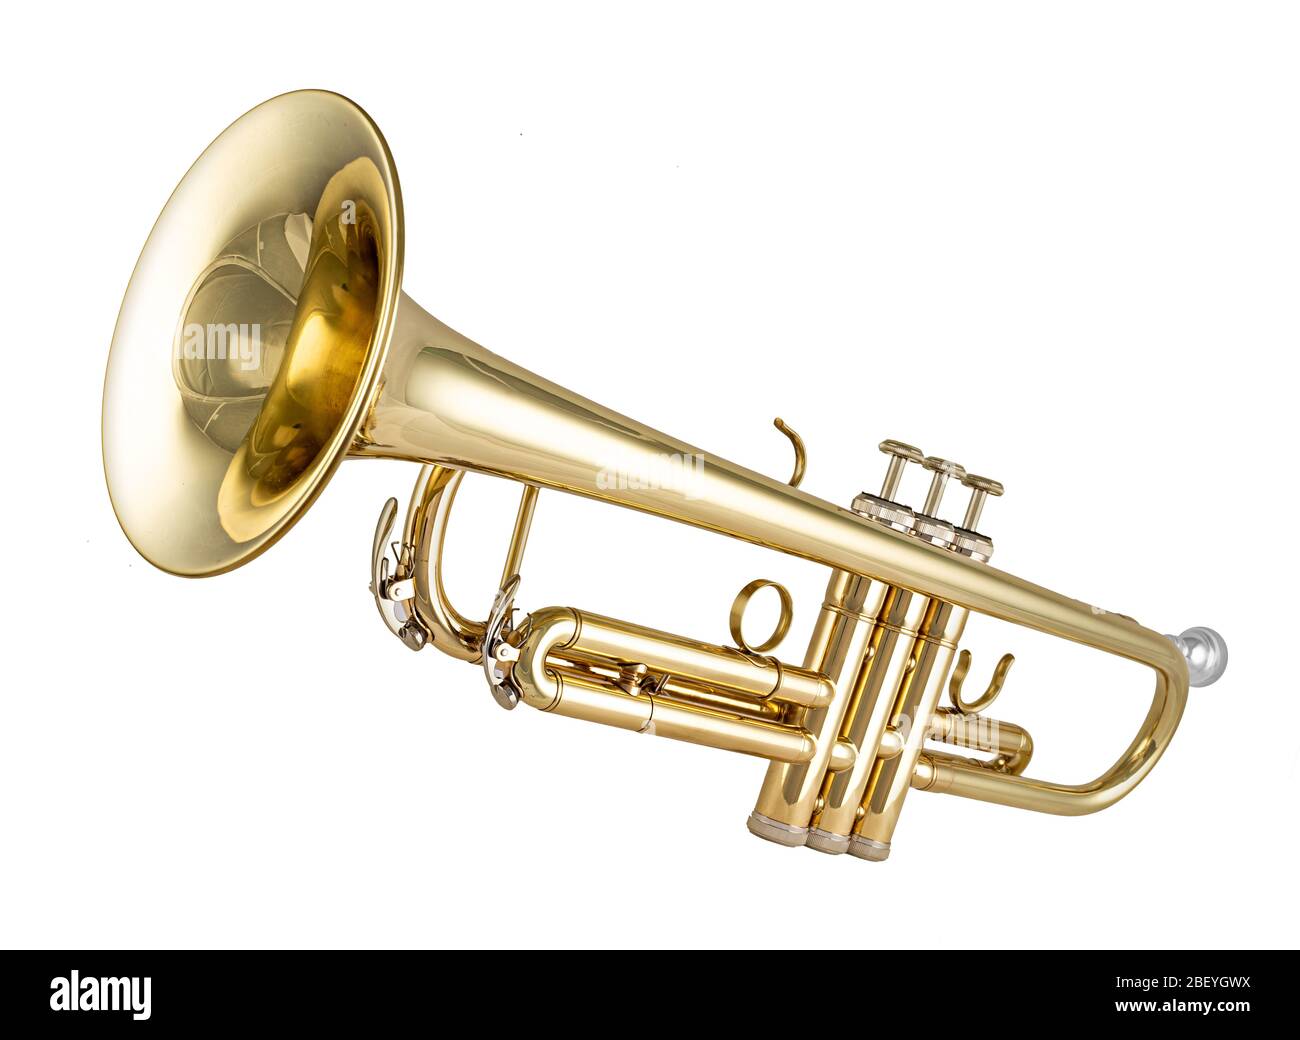 Nouvel instrument de musique en laiton métallique doré et brillant isolé sur fond blanc. Équipement musical animation orchestre concept. Banque D'Images